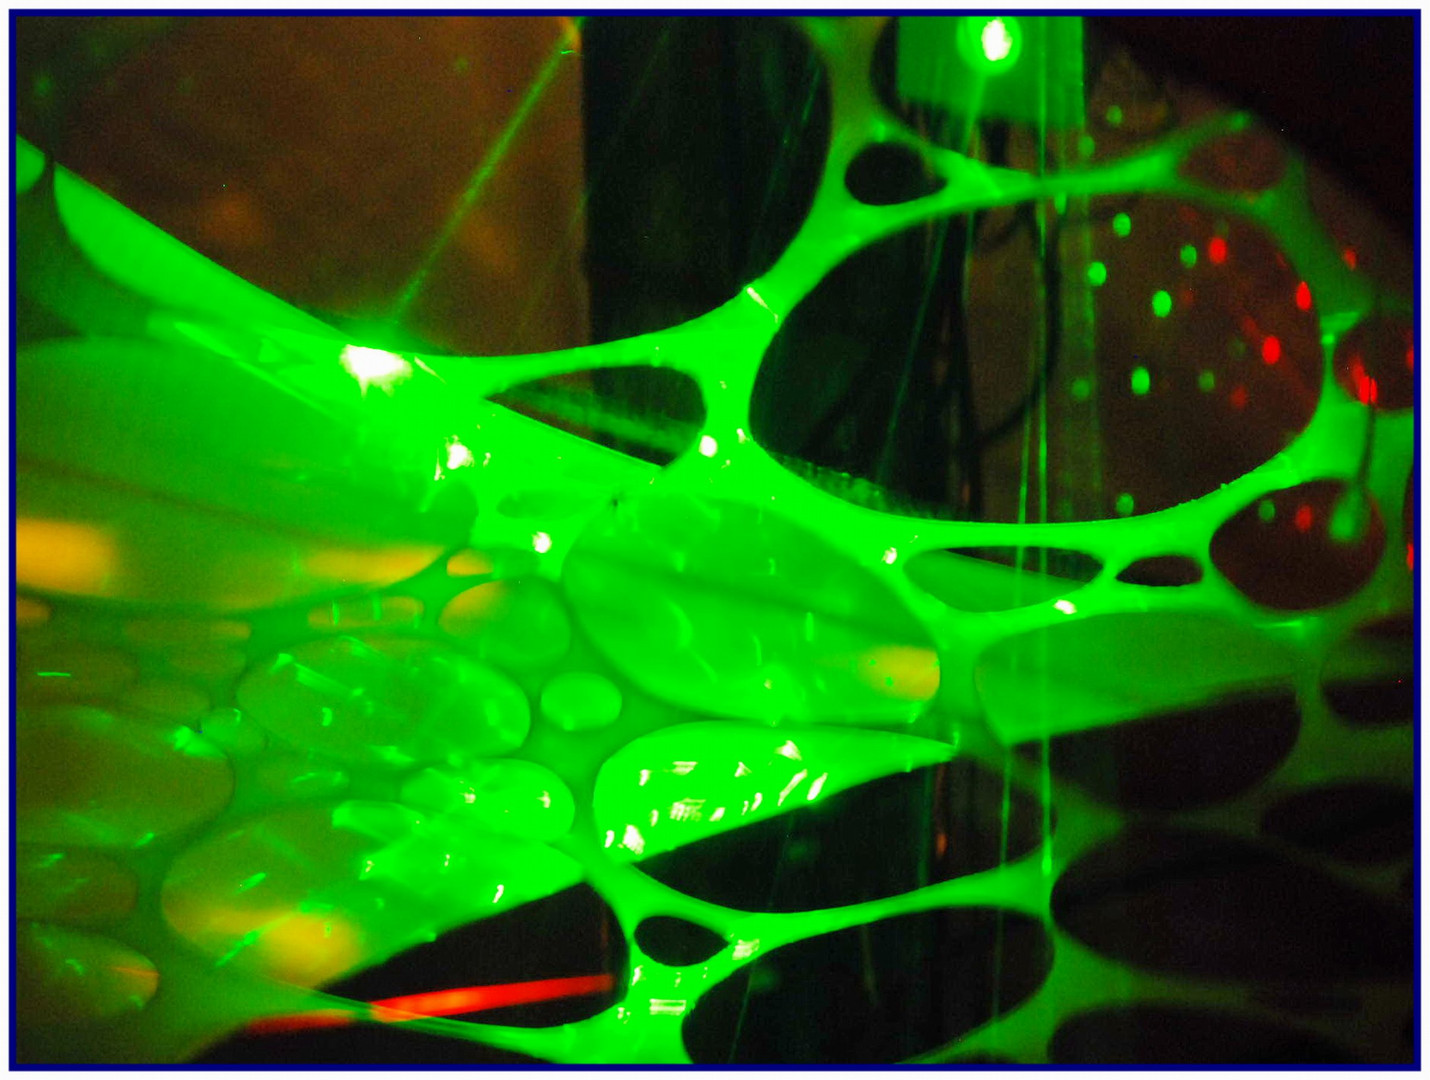 Das Netz der Grünen Laser-Spinne